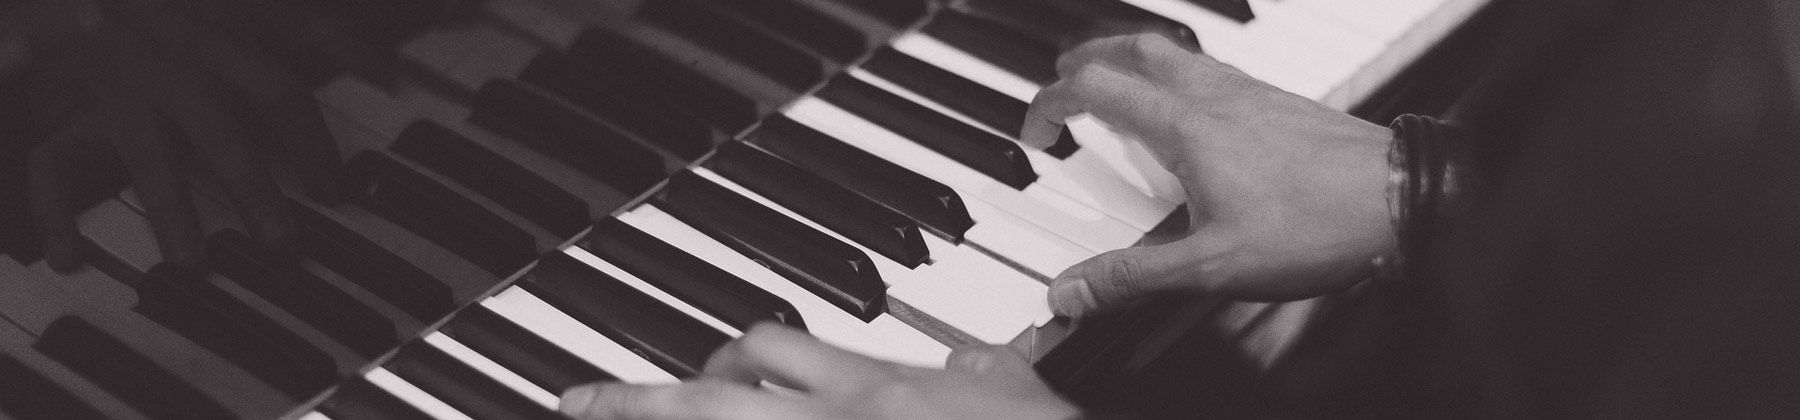 Bild "musikinstrumente-verleih:verleih-e-piano.jpg"